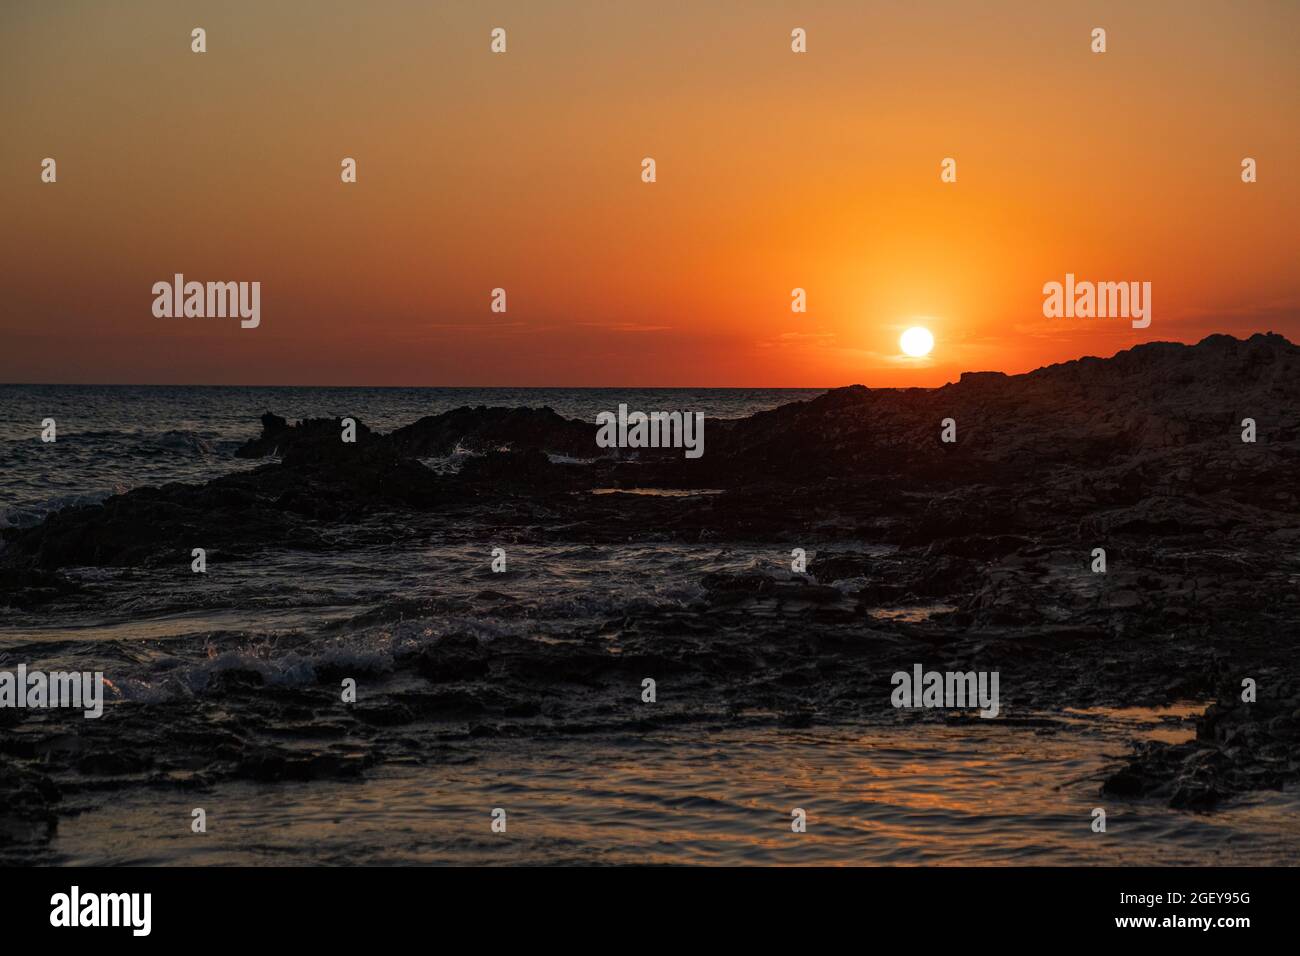 Coucher de soleil sur l'horizon de la mer Adriatique, ciel rouge coloré, île de Dugi Otok, Croatie Banque D'Images